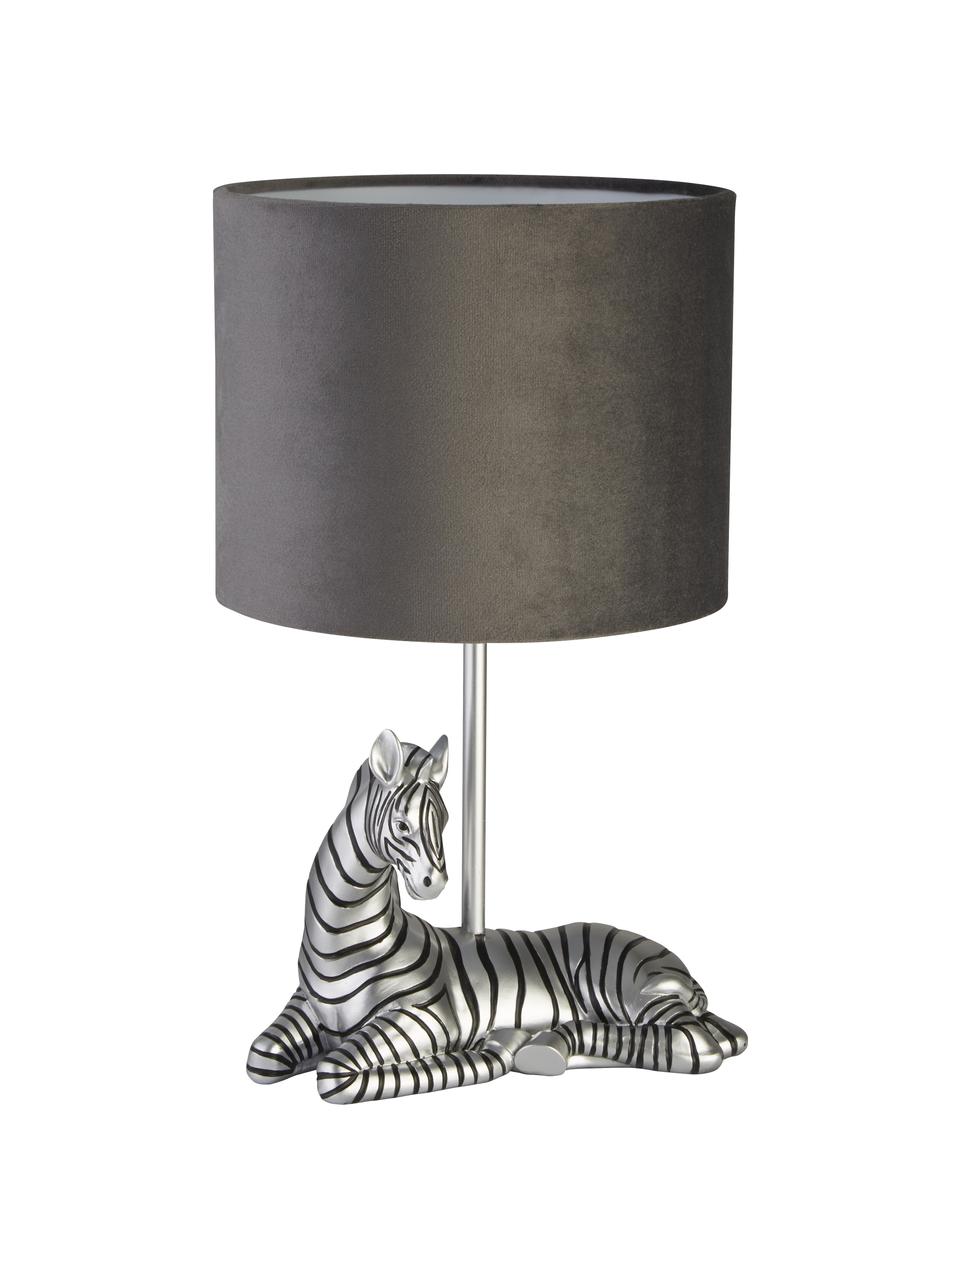 Design tafellamp Zebra met fluwelen lampenkap, Lampenkap: fluweel, Lampvoet: polyresin, Grijs, zilverkleurig, zwart, Ø 20 x H 35 cm